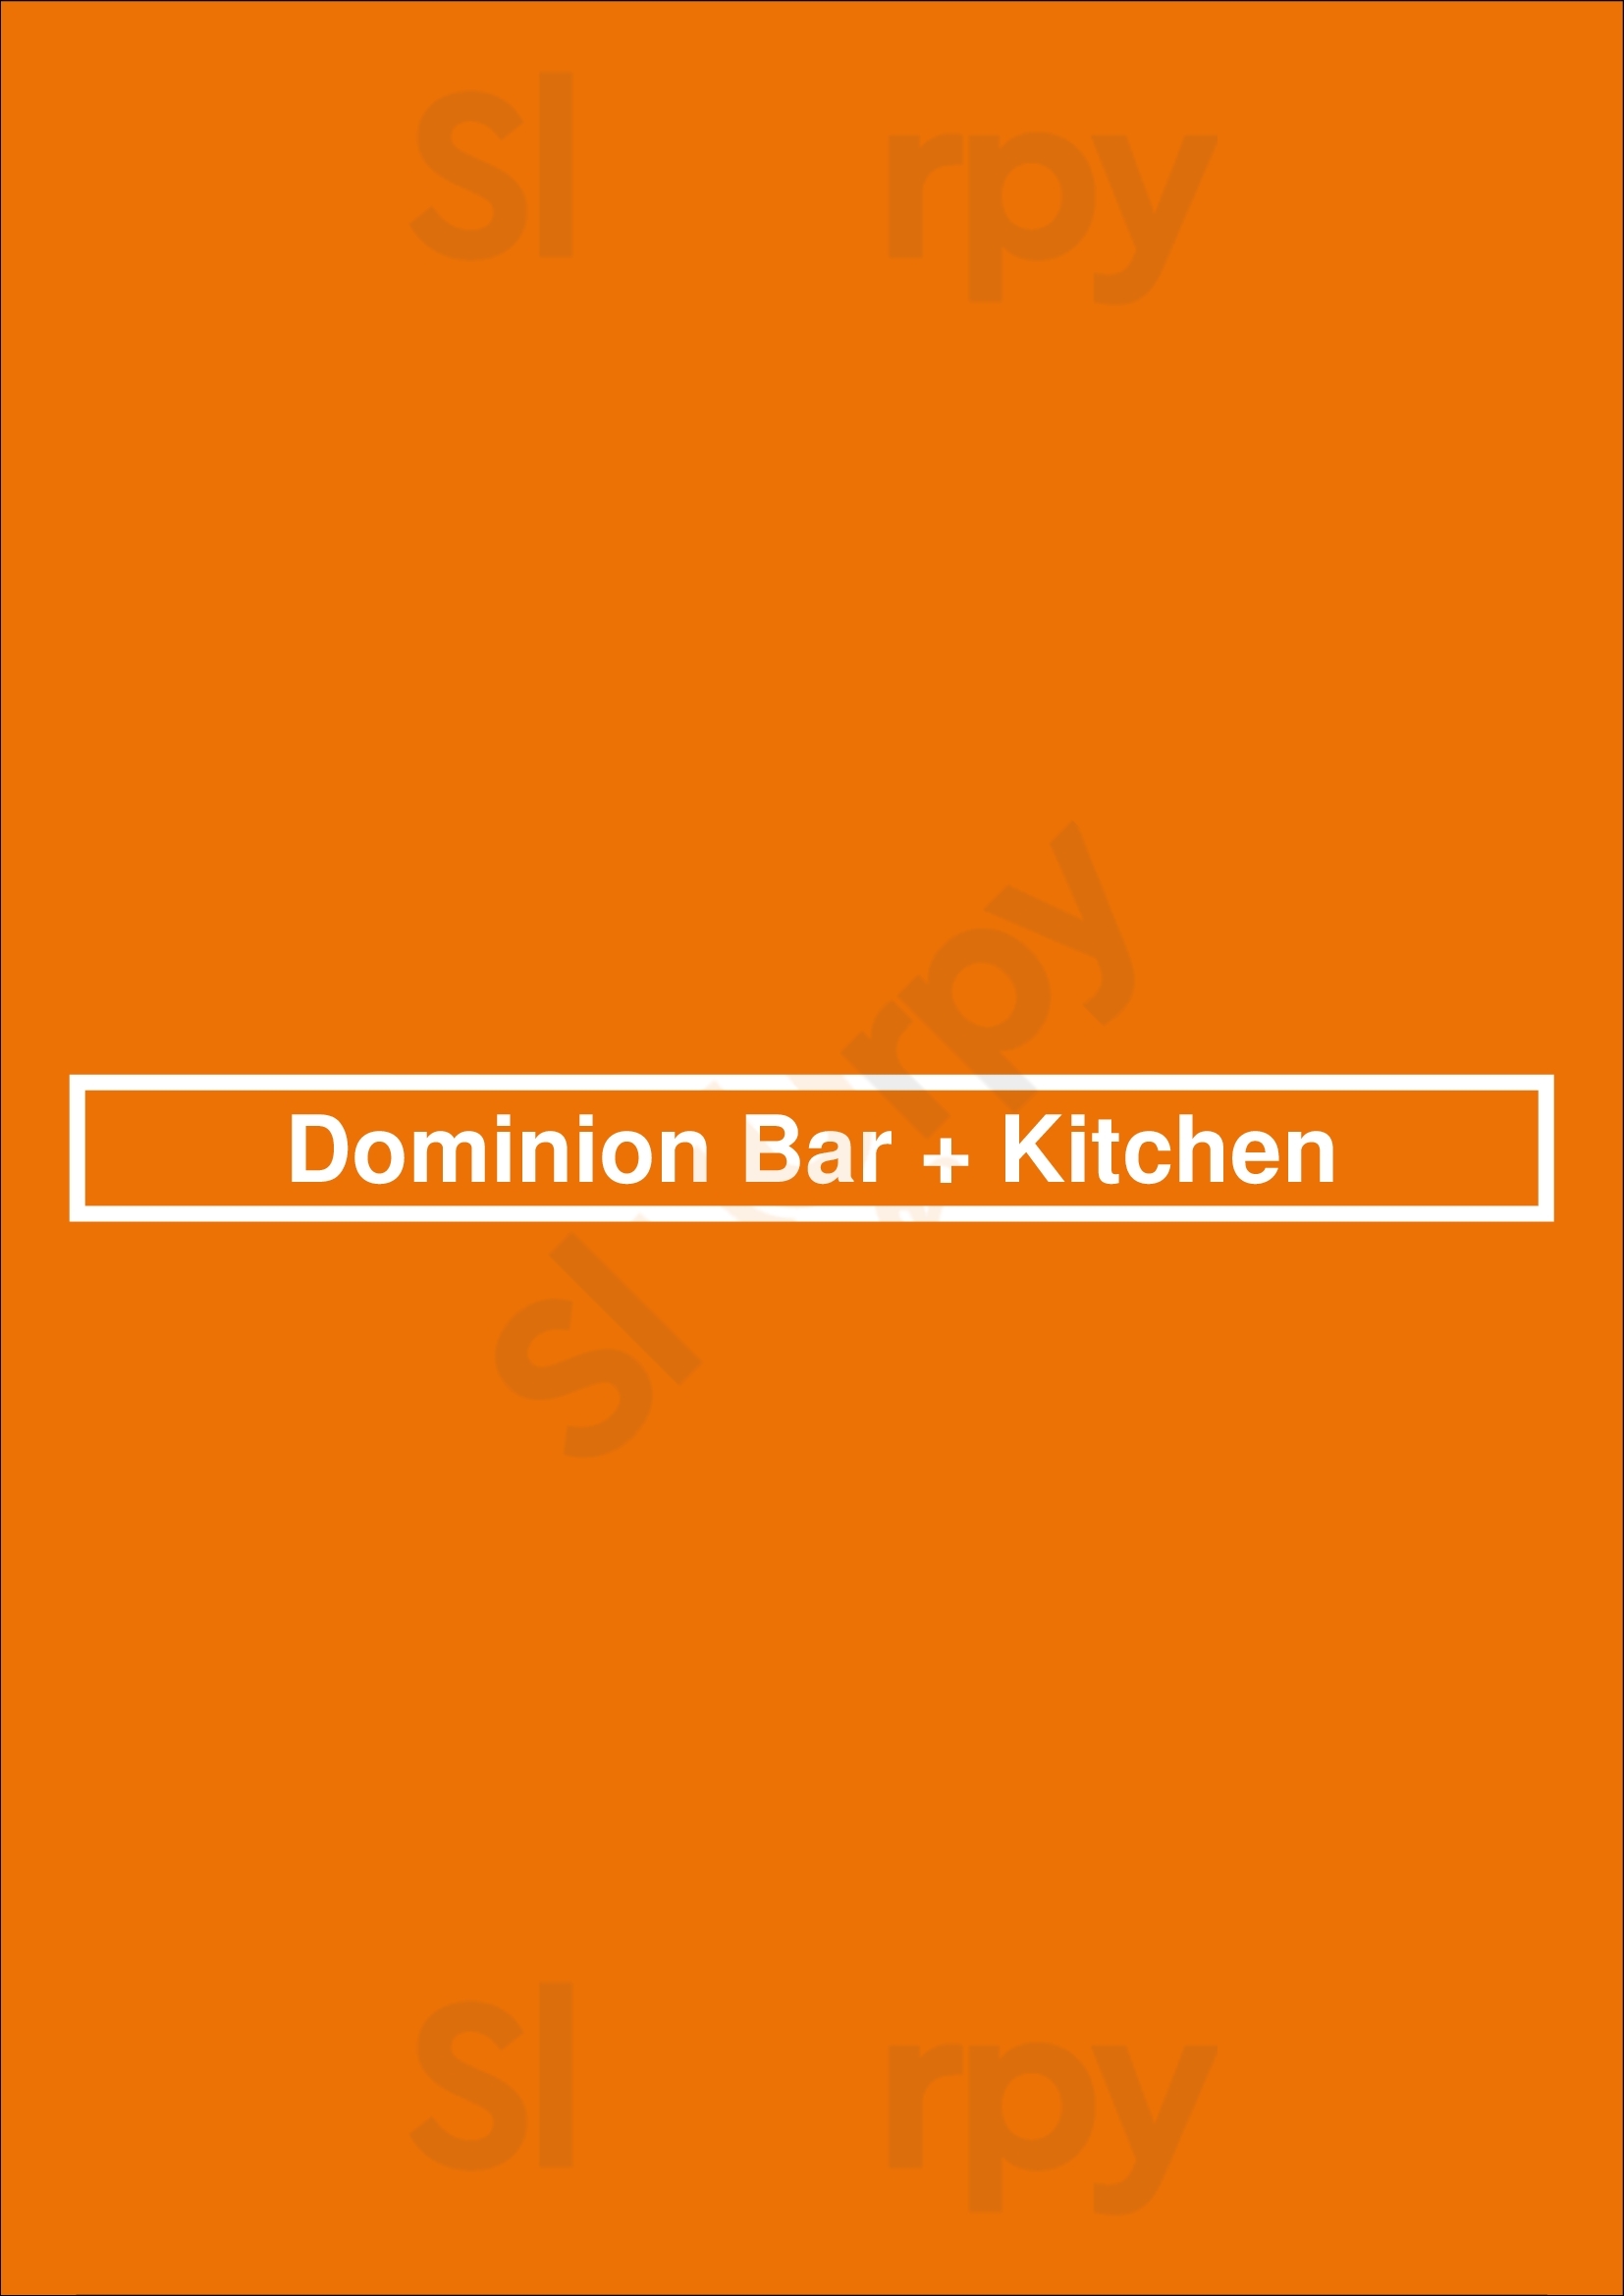 Dominion Bar + Kitchen Surrey Menu - 1